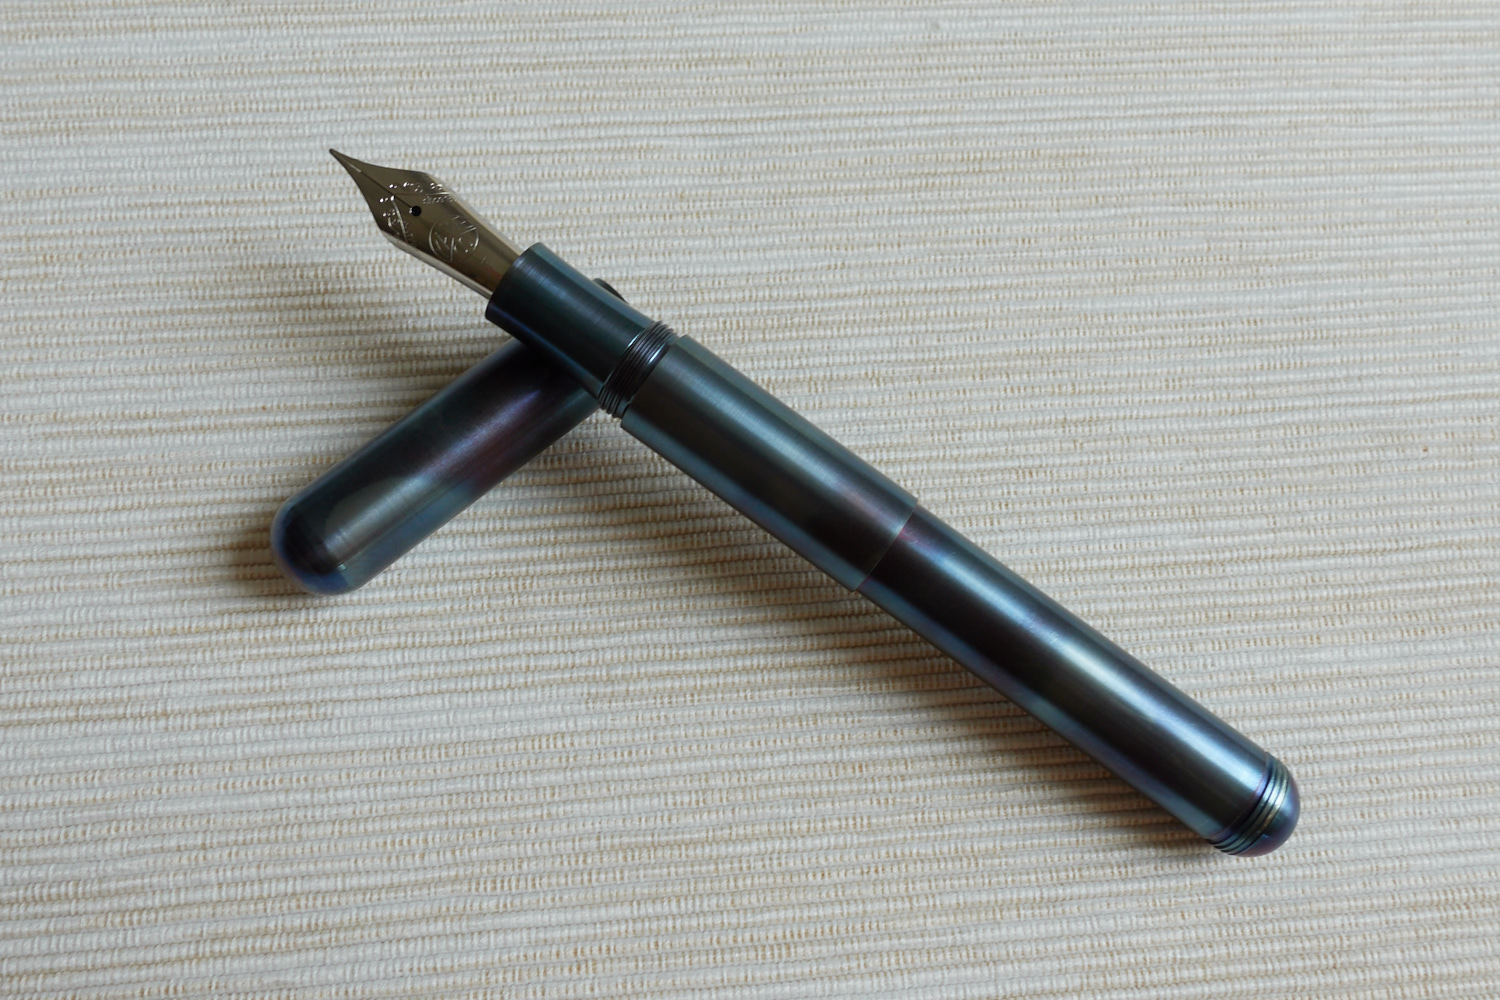 支supra超越系列还挺不习惯,一般见到的kaweco钢笔都是做便携款的短钢